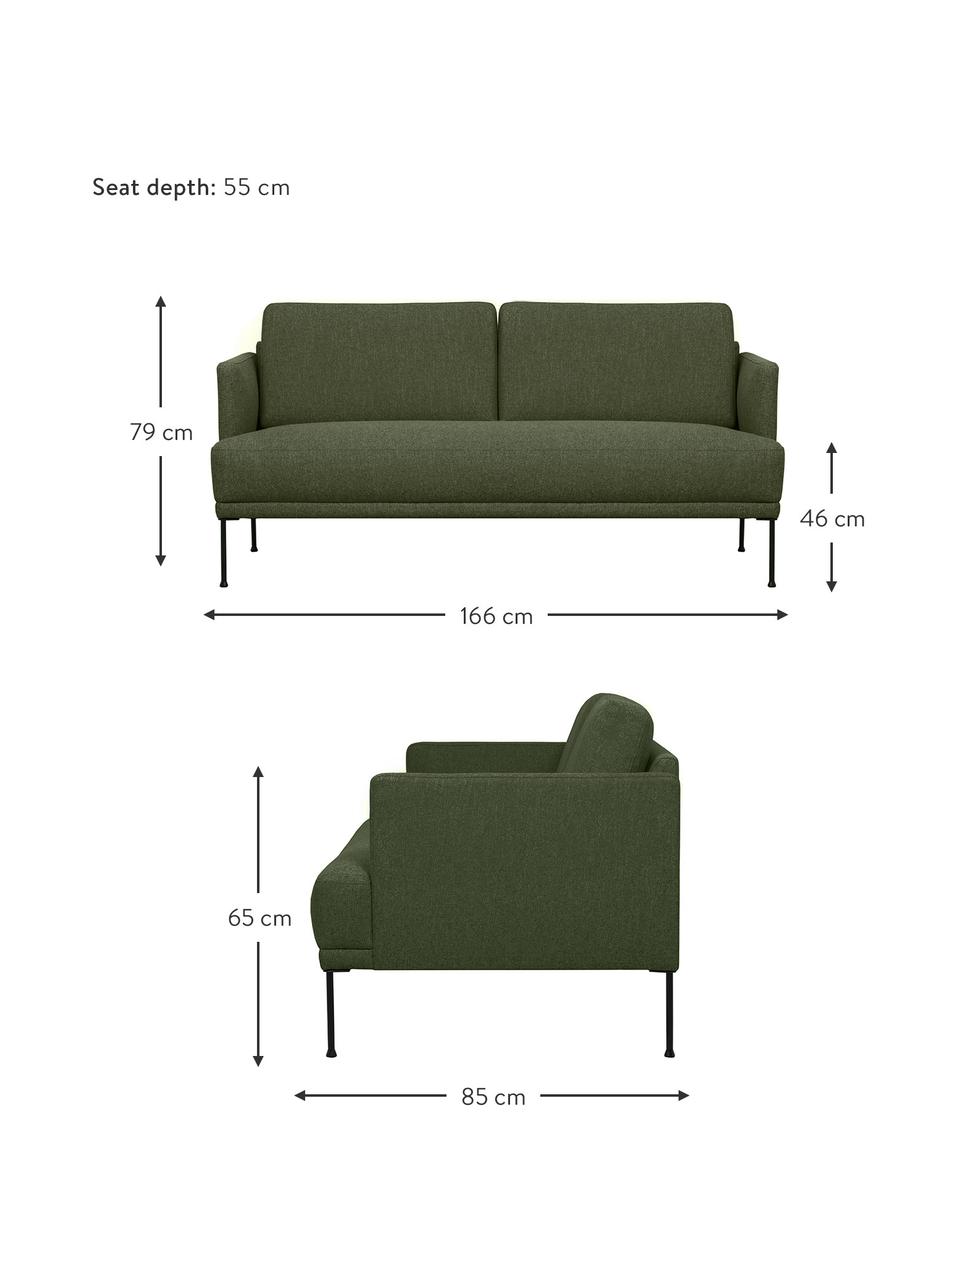 Sofa z metalowymi nogami Fluente (2-osobowa), Tapicerka: 100% poliester Dzięki tka, Nogi: metal malowany proszkowo, Ciemny zielony, S 166 x G 85 cm